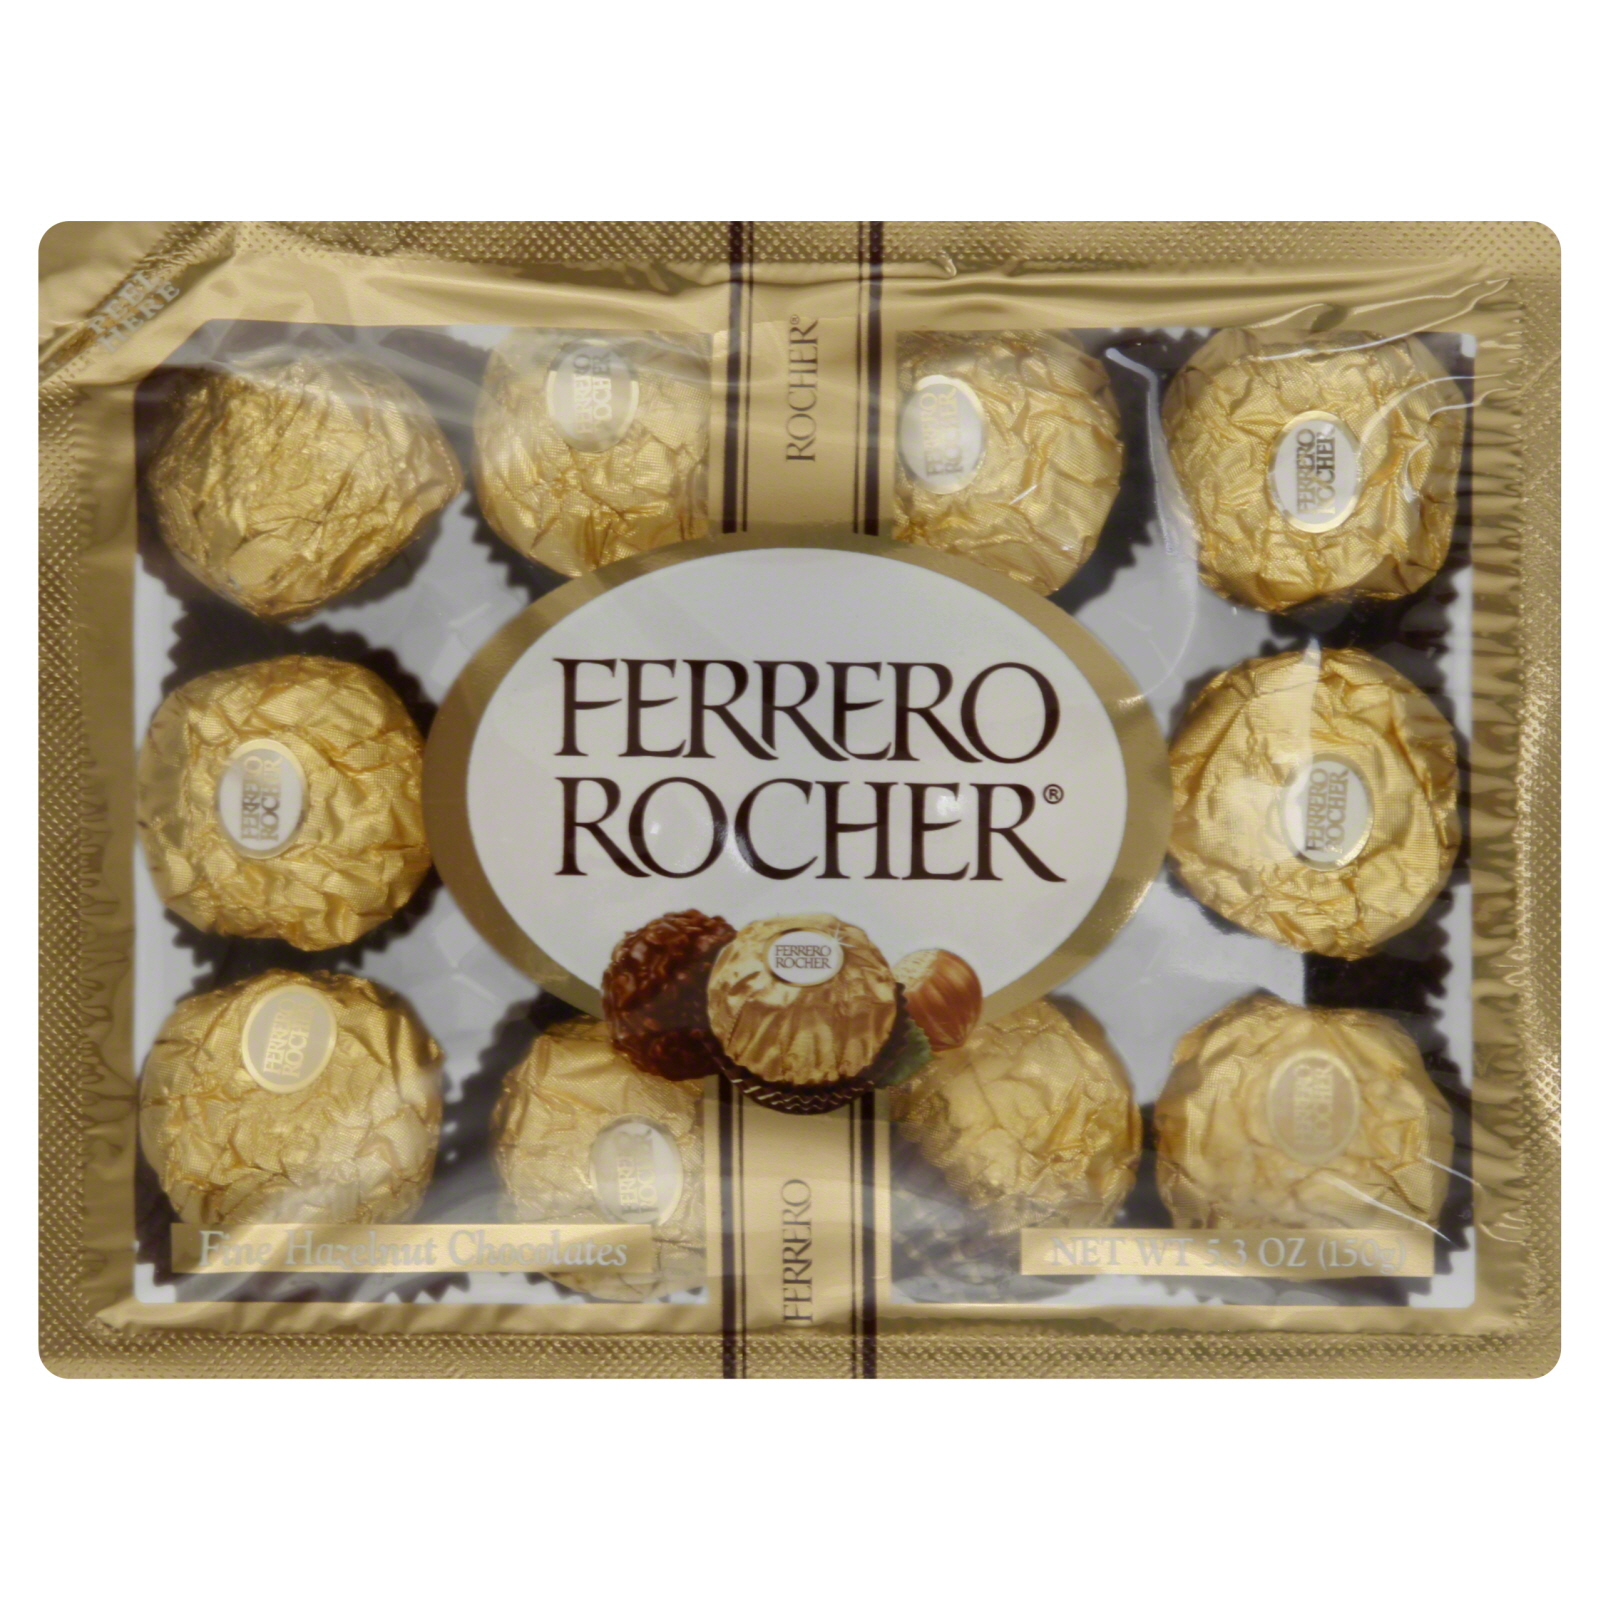 Ferrero Rocher Fine Hazelnut Chocolates, 5.3 oz (150 g)